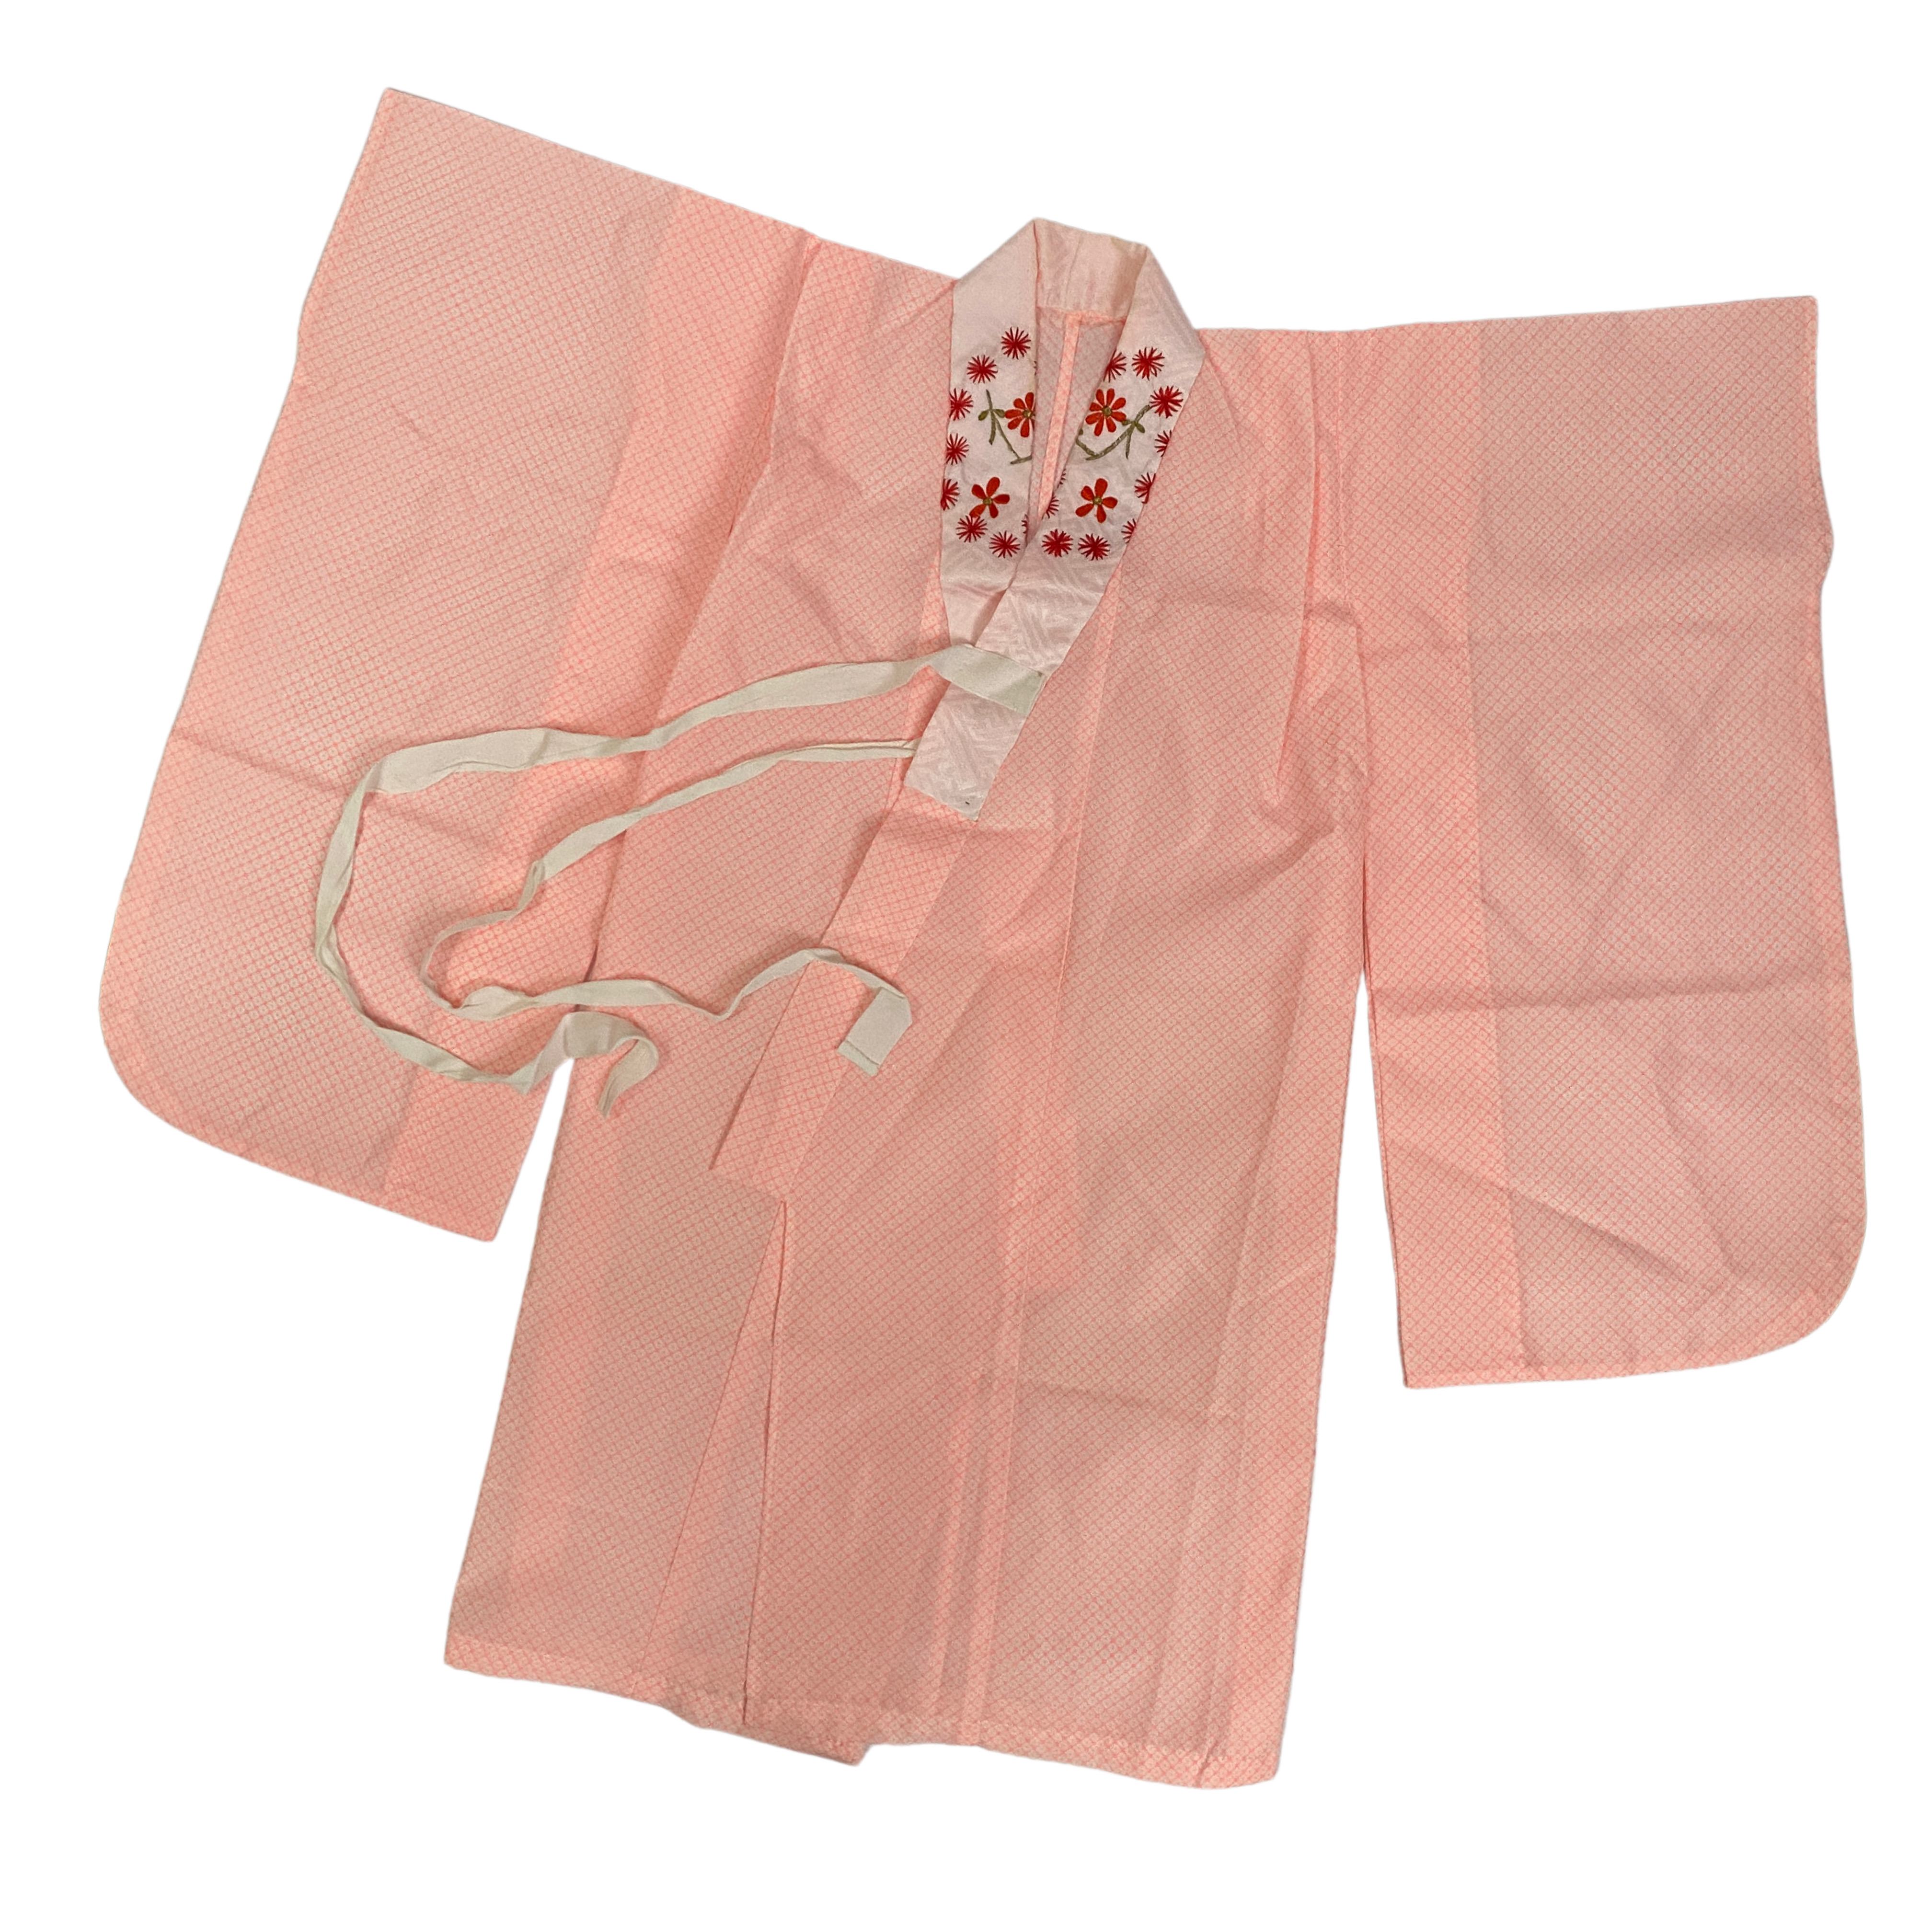 Pinker Unterkimono aus dem 3-teiligen Set einzeln